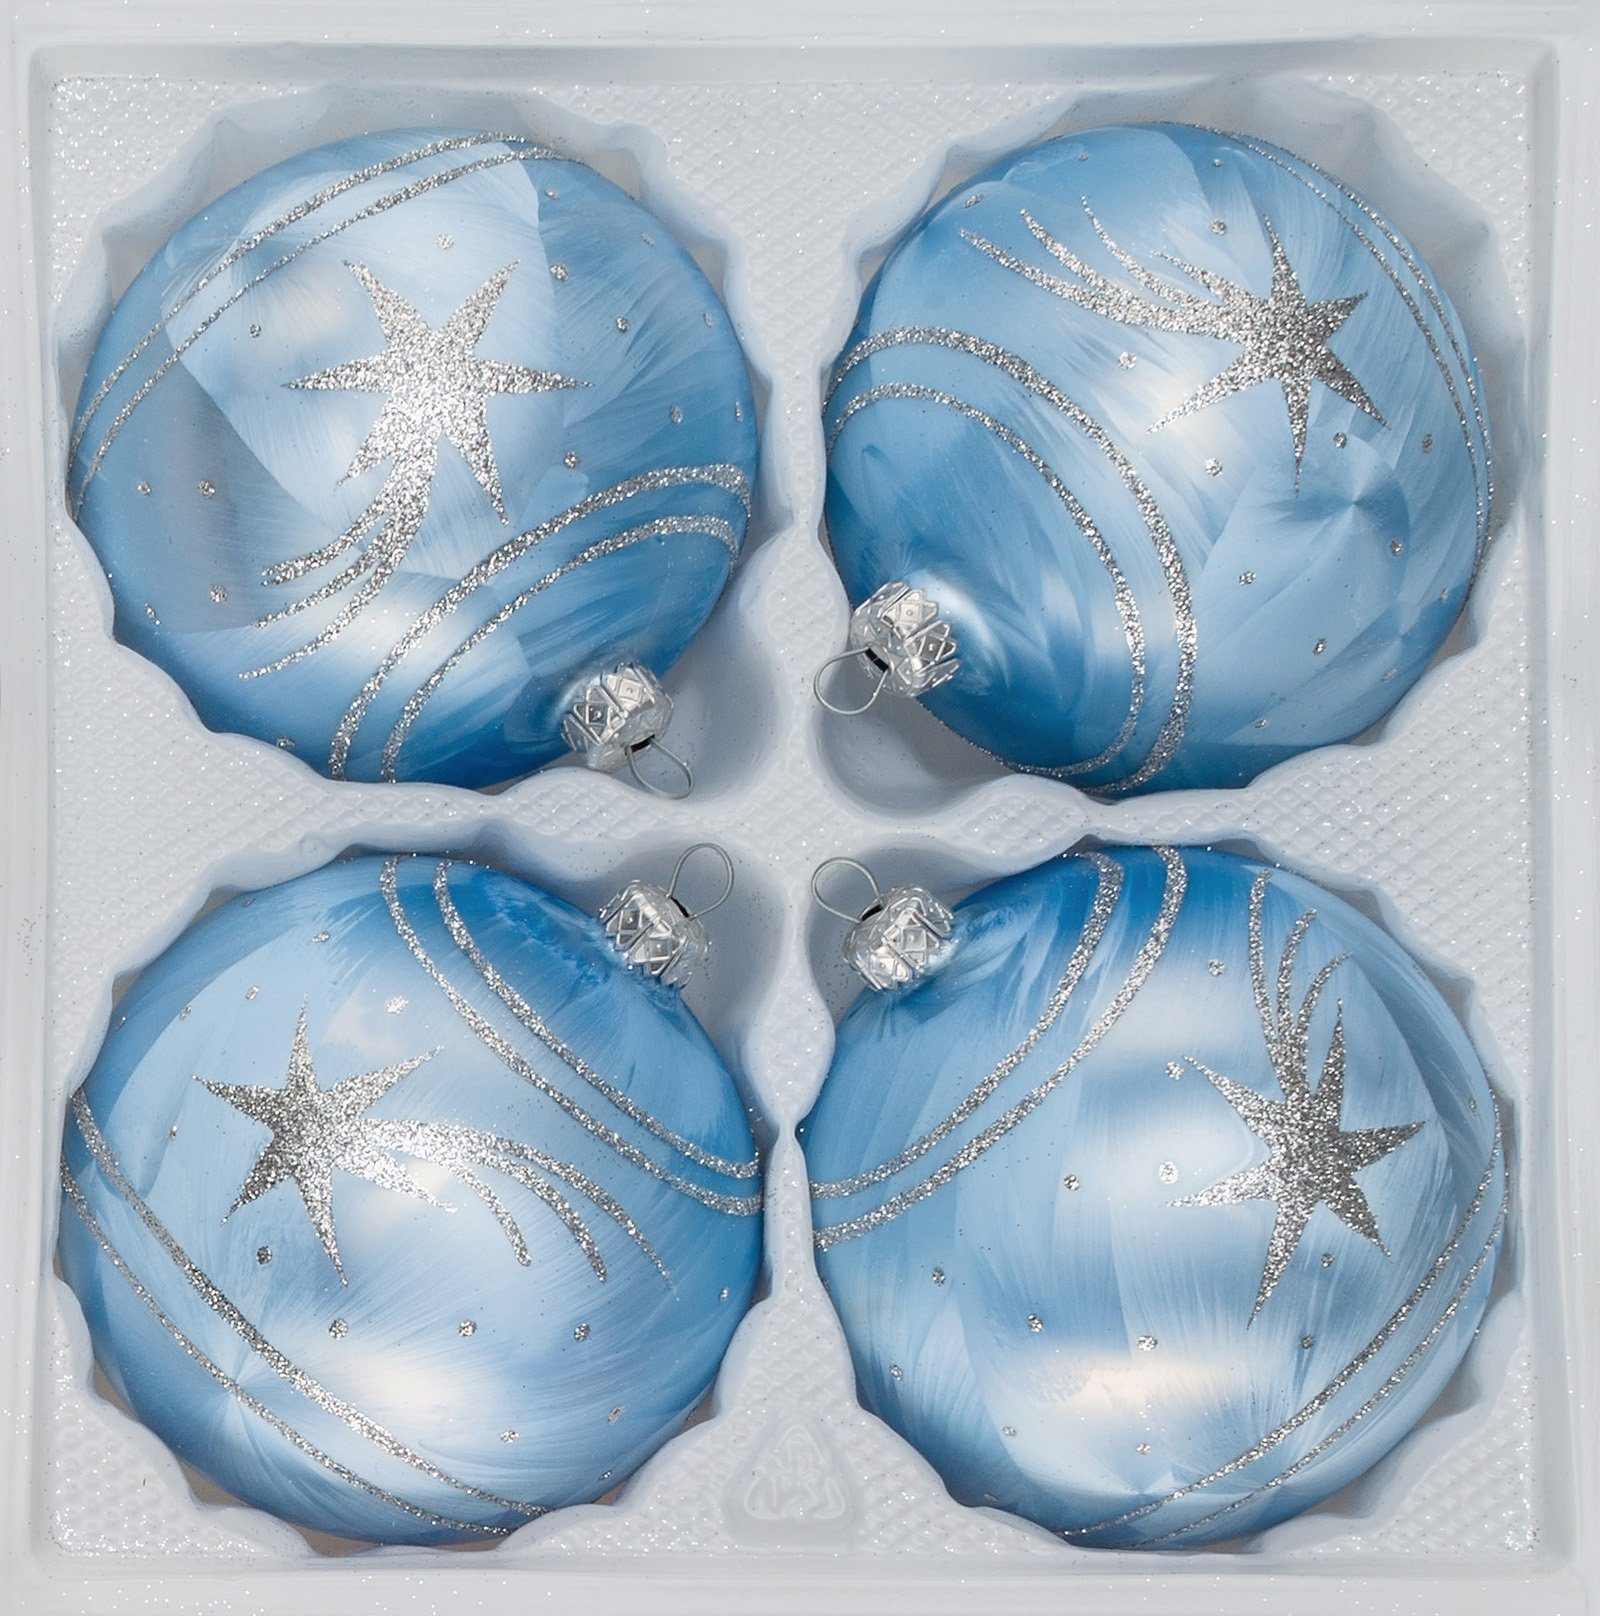 Navidacio Weihnachtsbaumkugel 4 tlg. Glas-Weihnachtskugeln Set 8cm Ø in Ice Blau Silber Komet